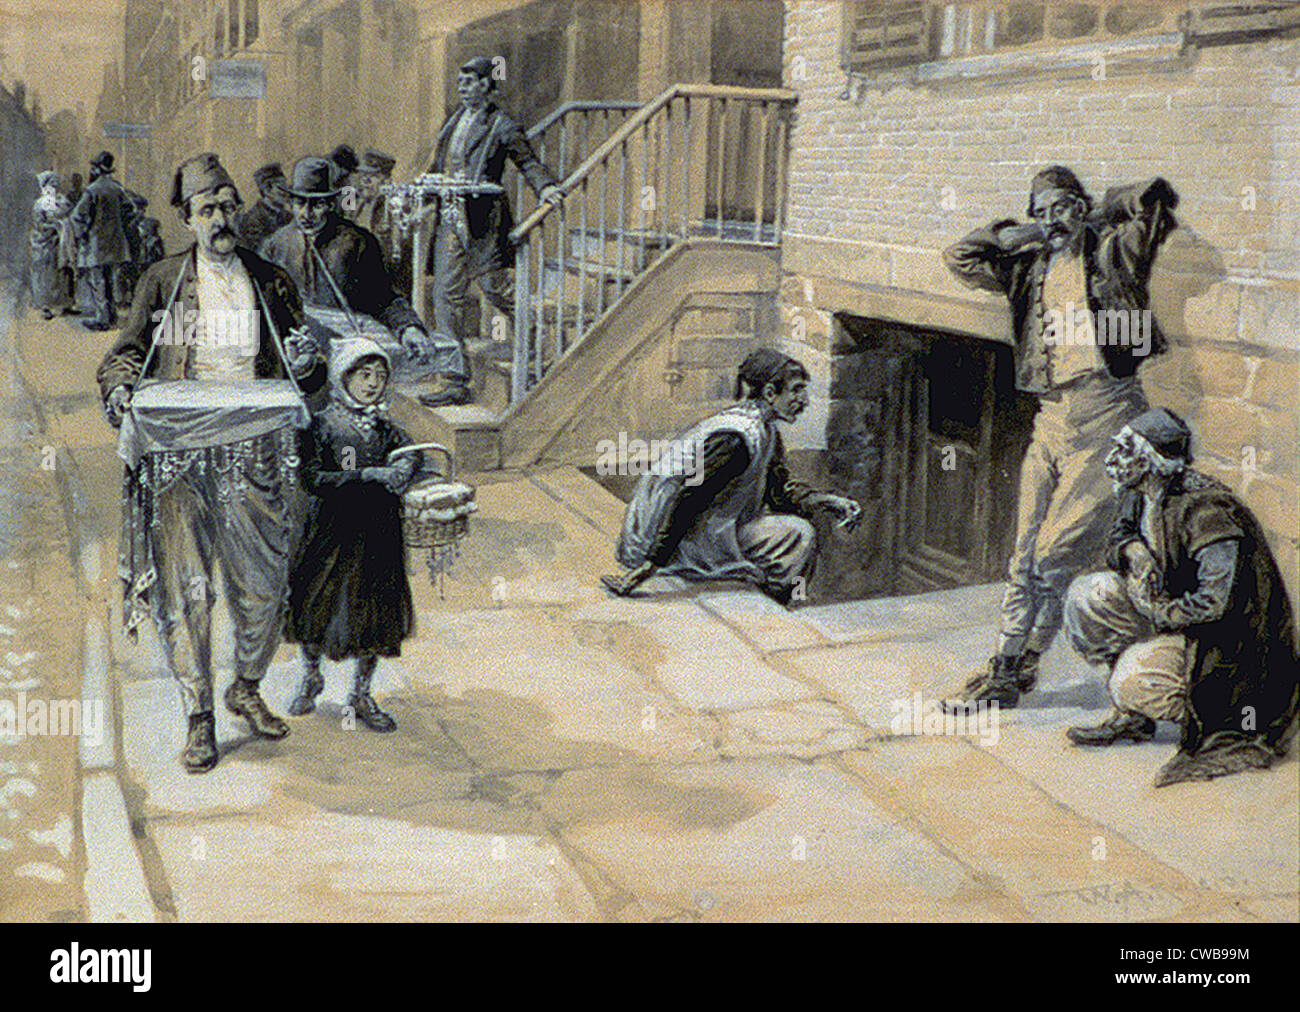 La colonie turque dans la ville de New York, illustration par W.A. Rogers. début du xxe siècle Banque D'Images